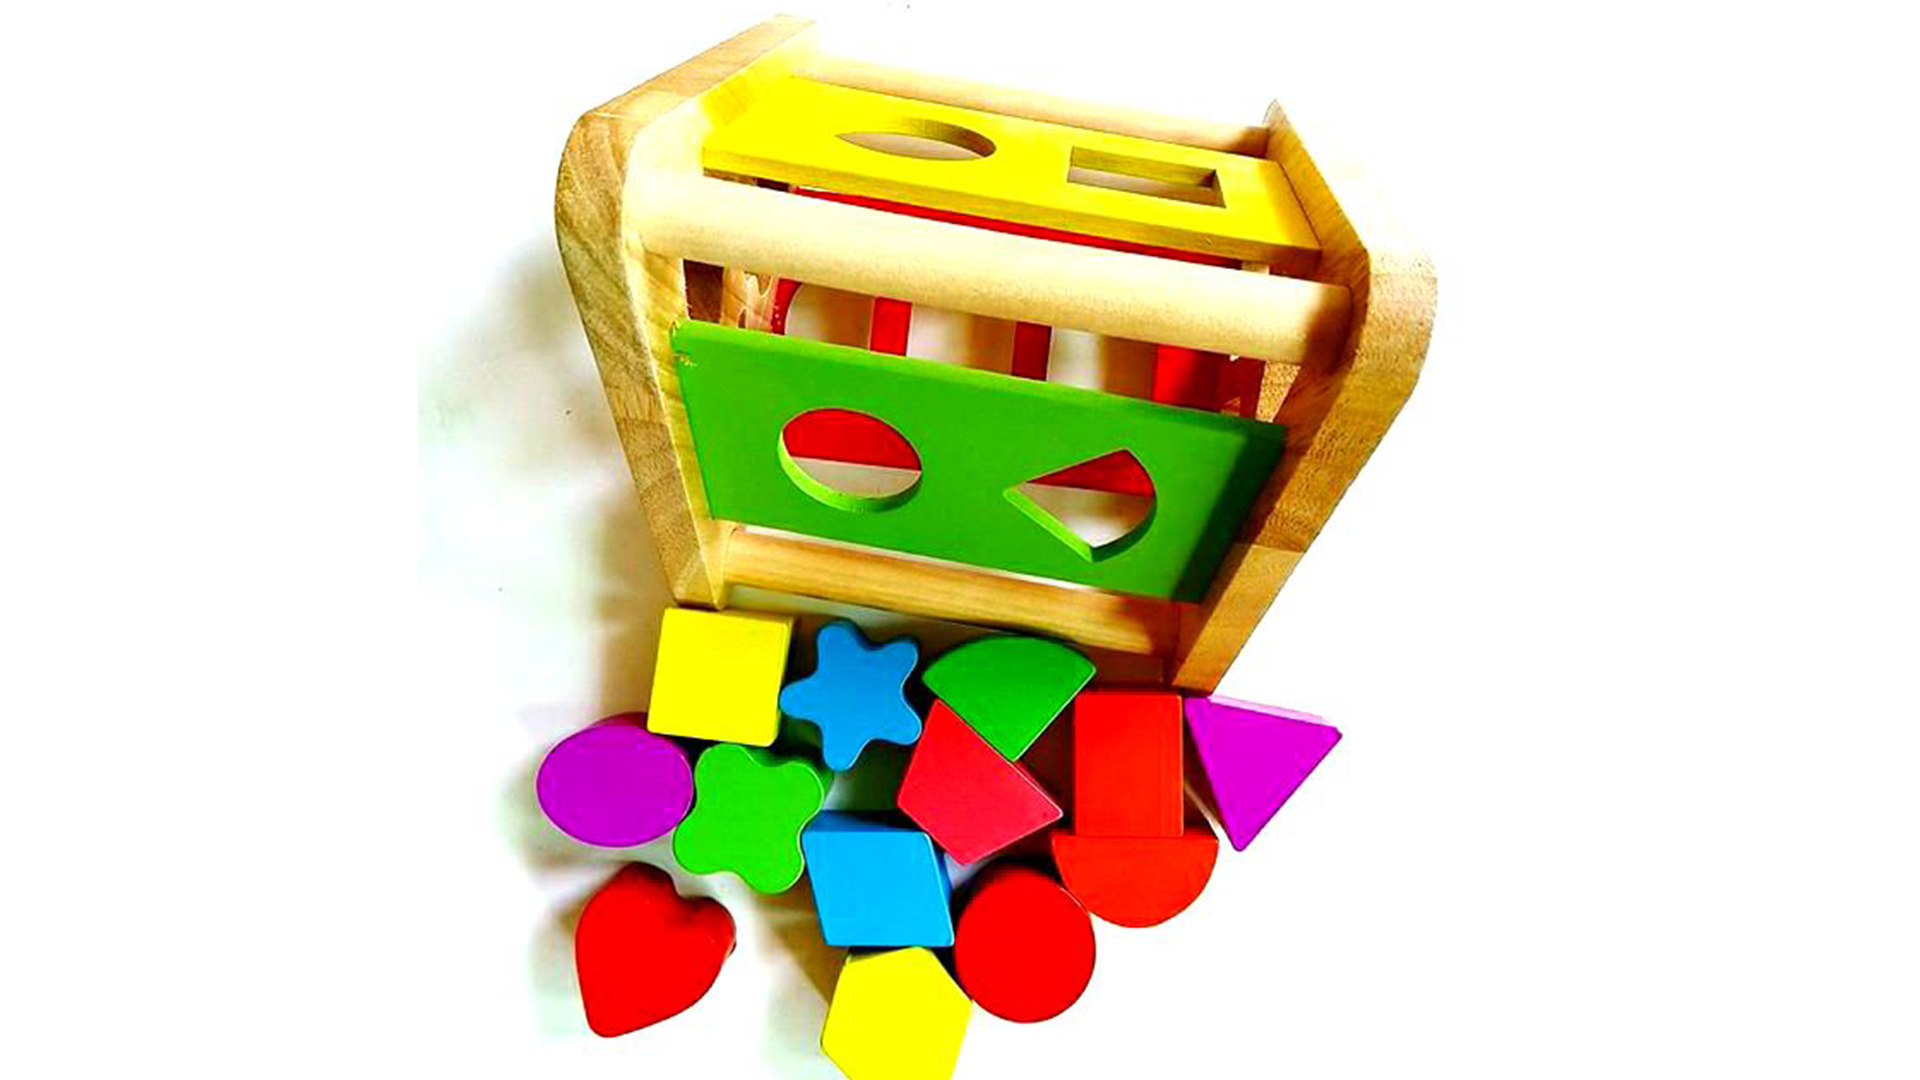 Zabawka Drewniana - Trójkątny Sorter Nauka Rozpoznawania Kształtów i Kolorów TOMDORIX